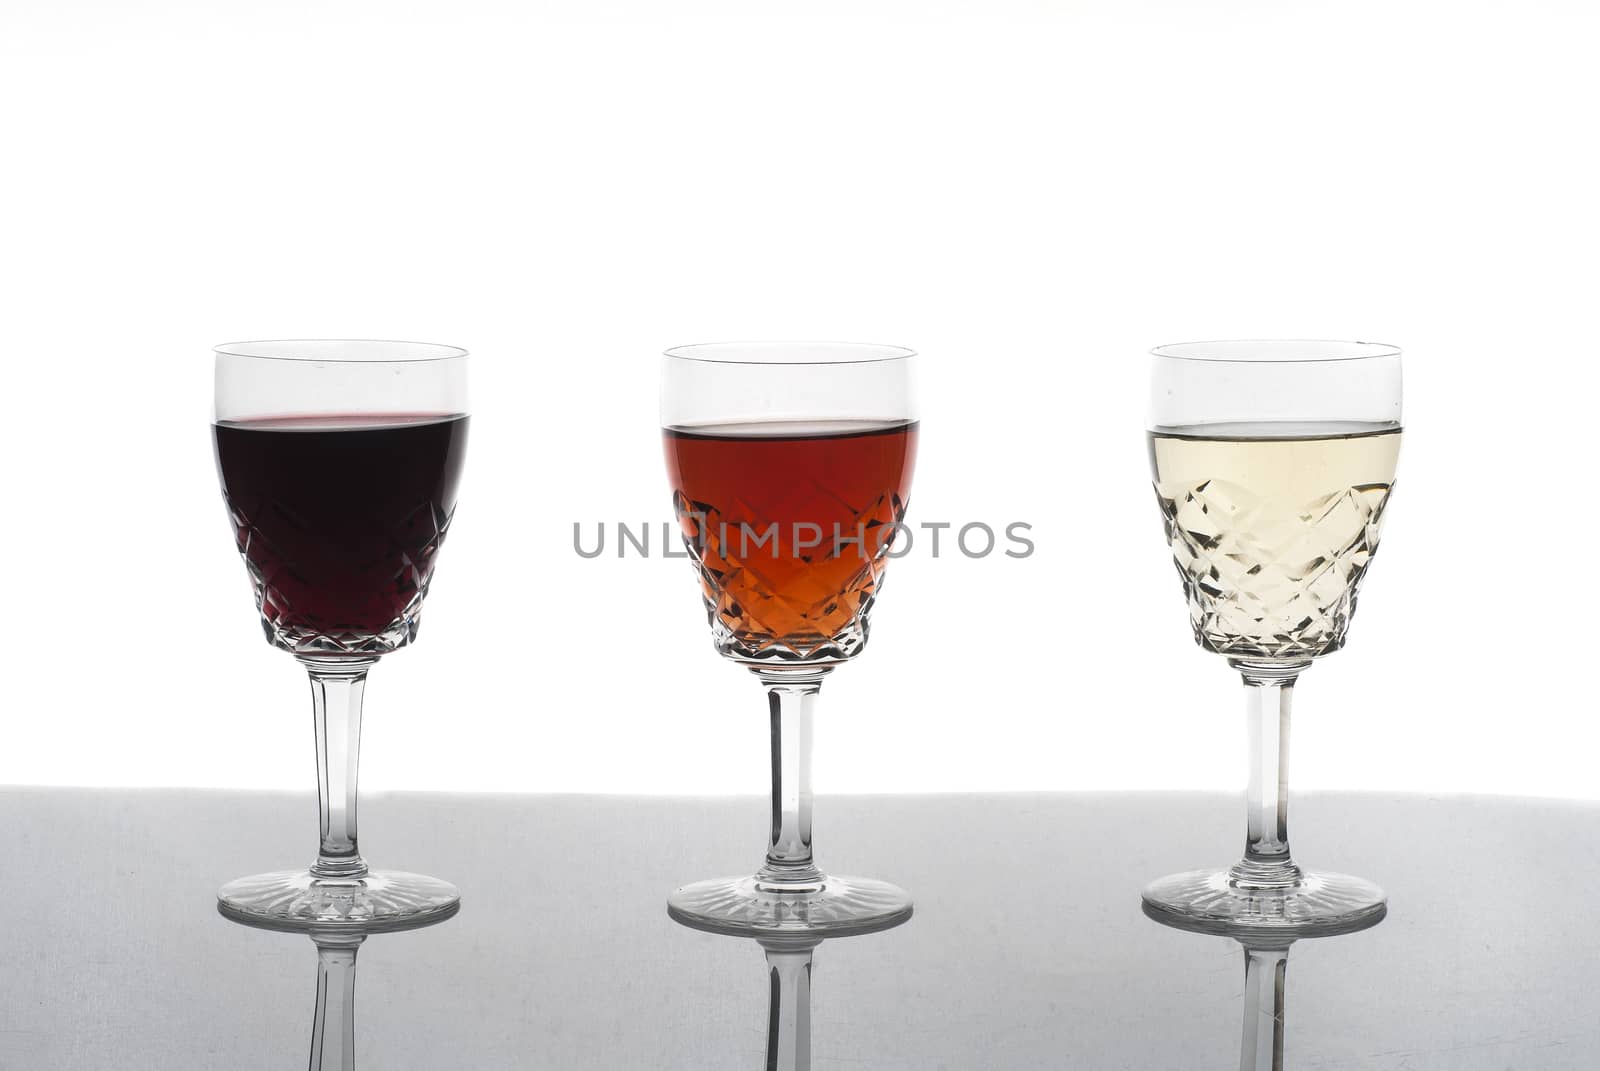 Three glasses of wine, rose wine, red wine, white wine, white background